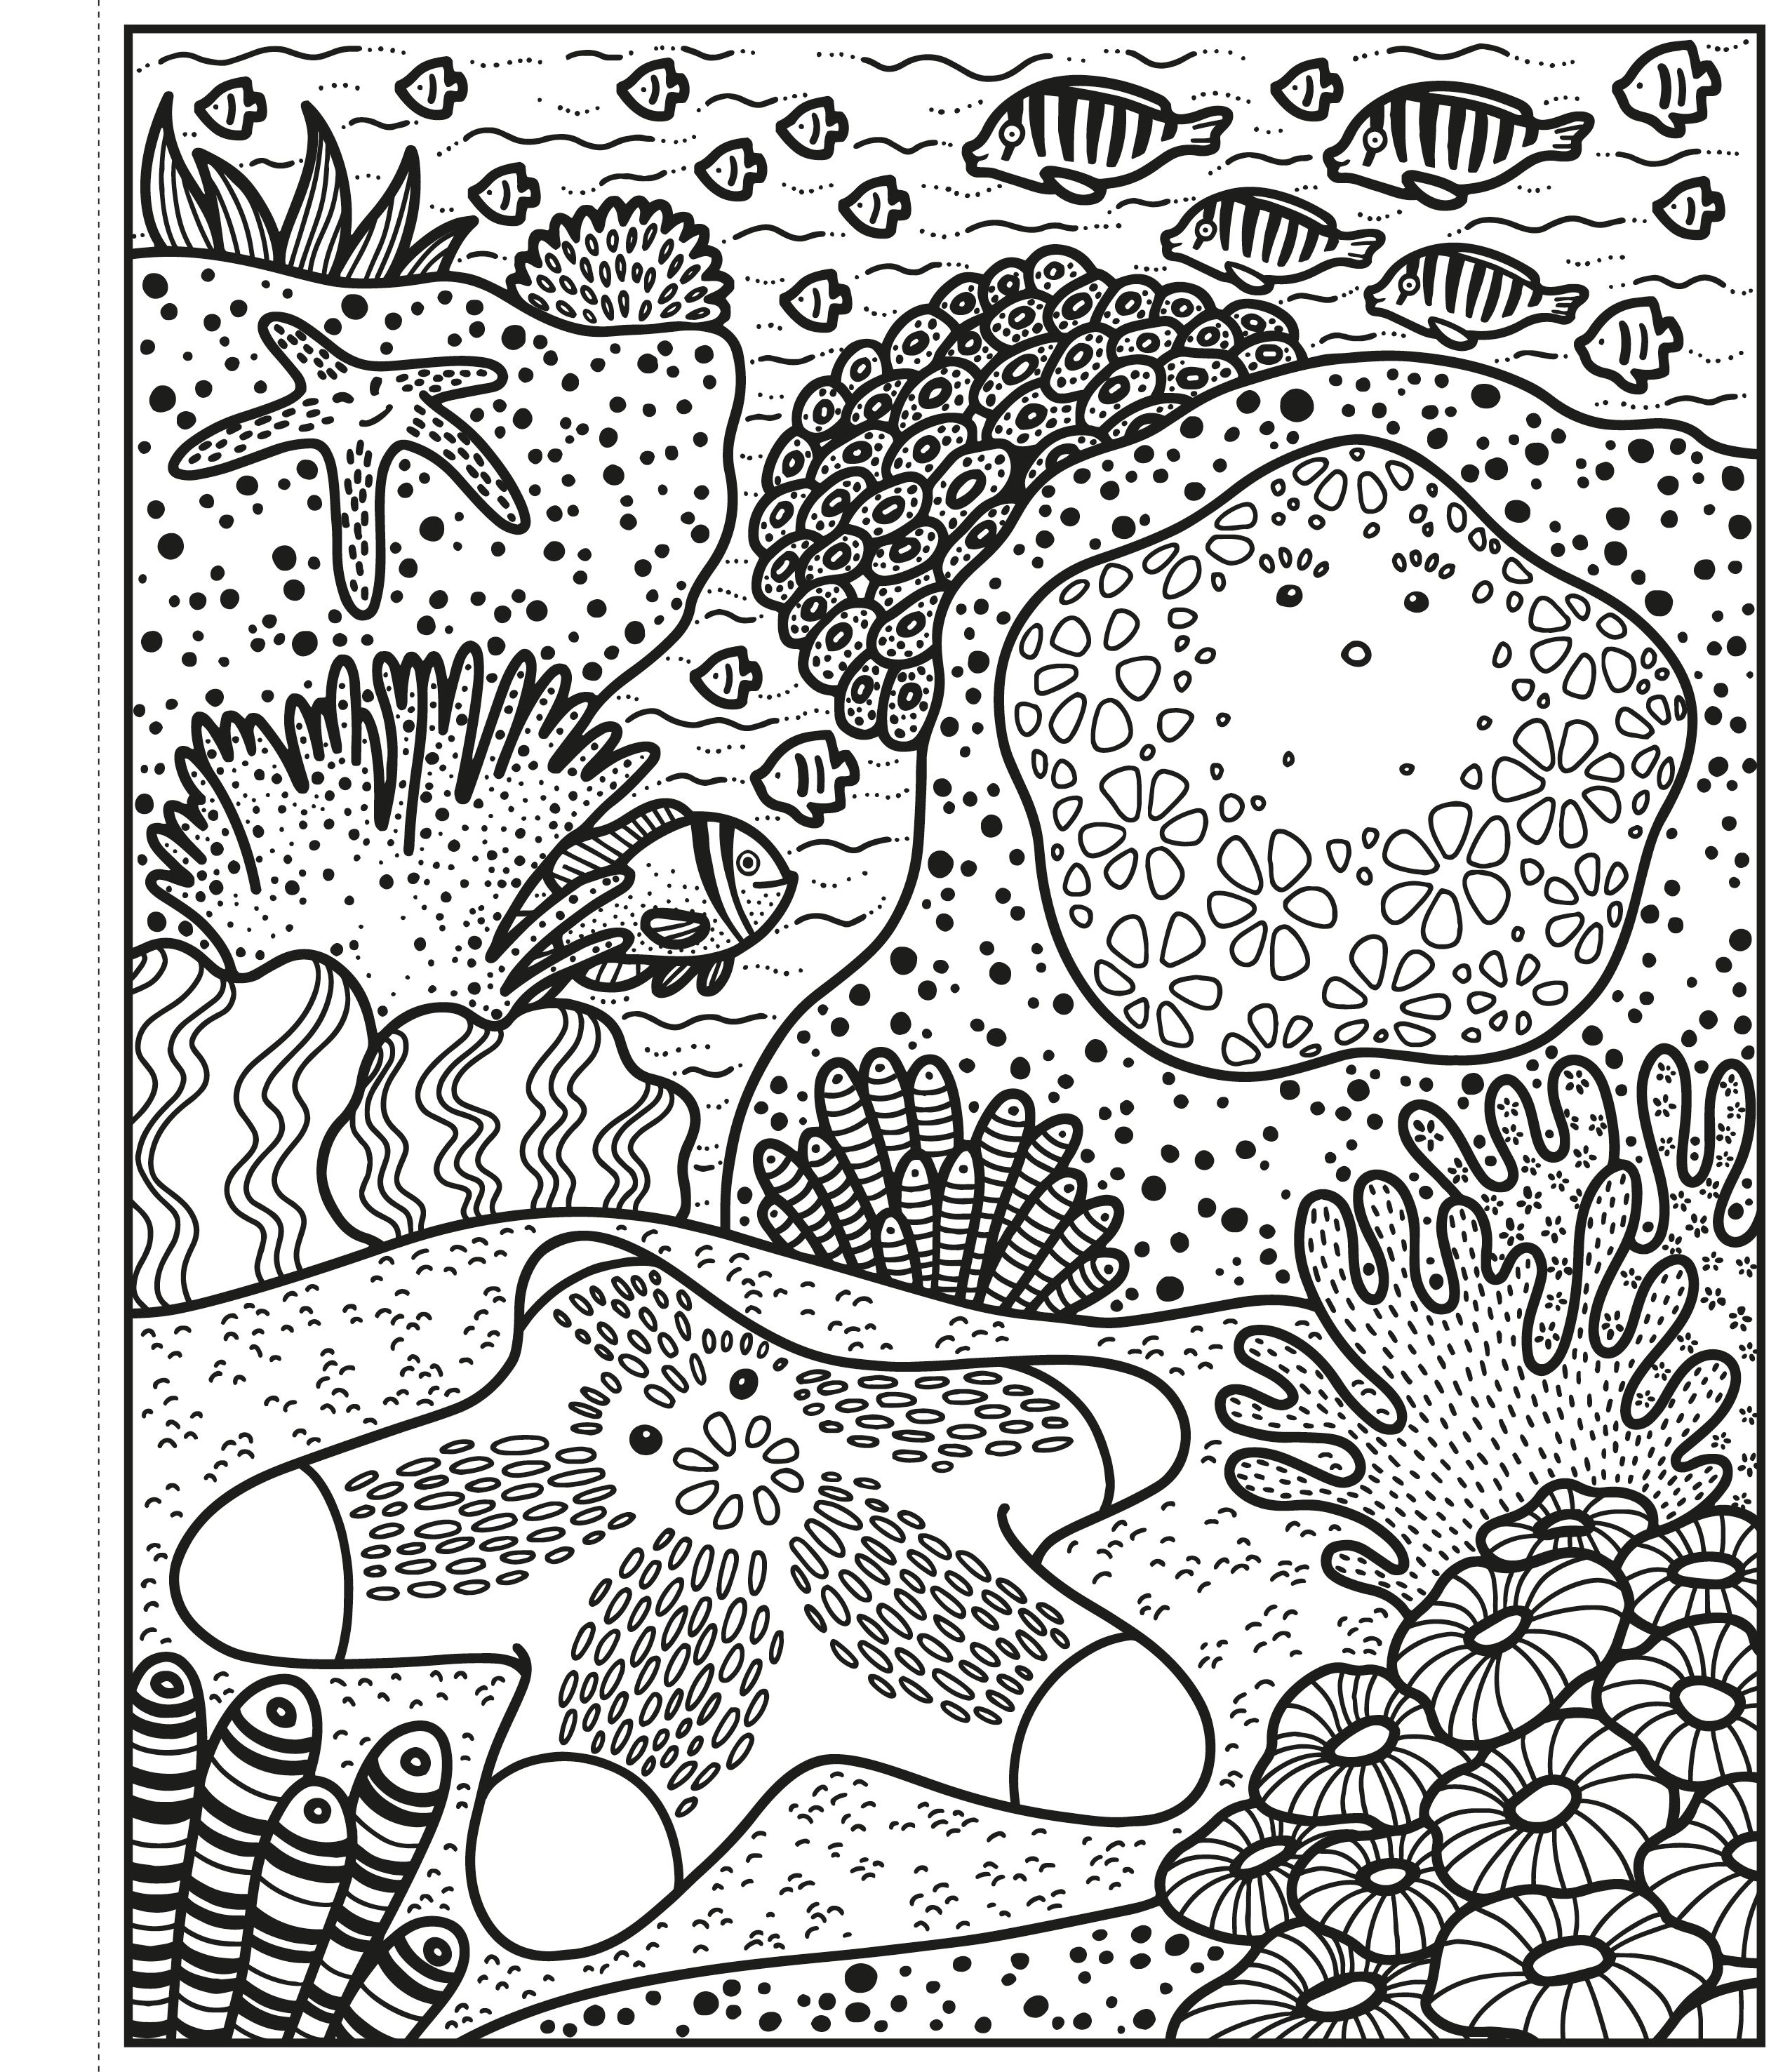 Usborne Books | Magic Painting Book - Coral Reef